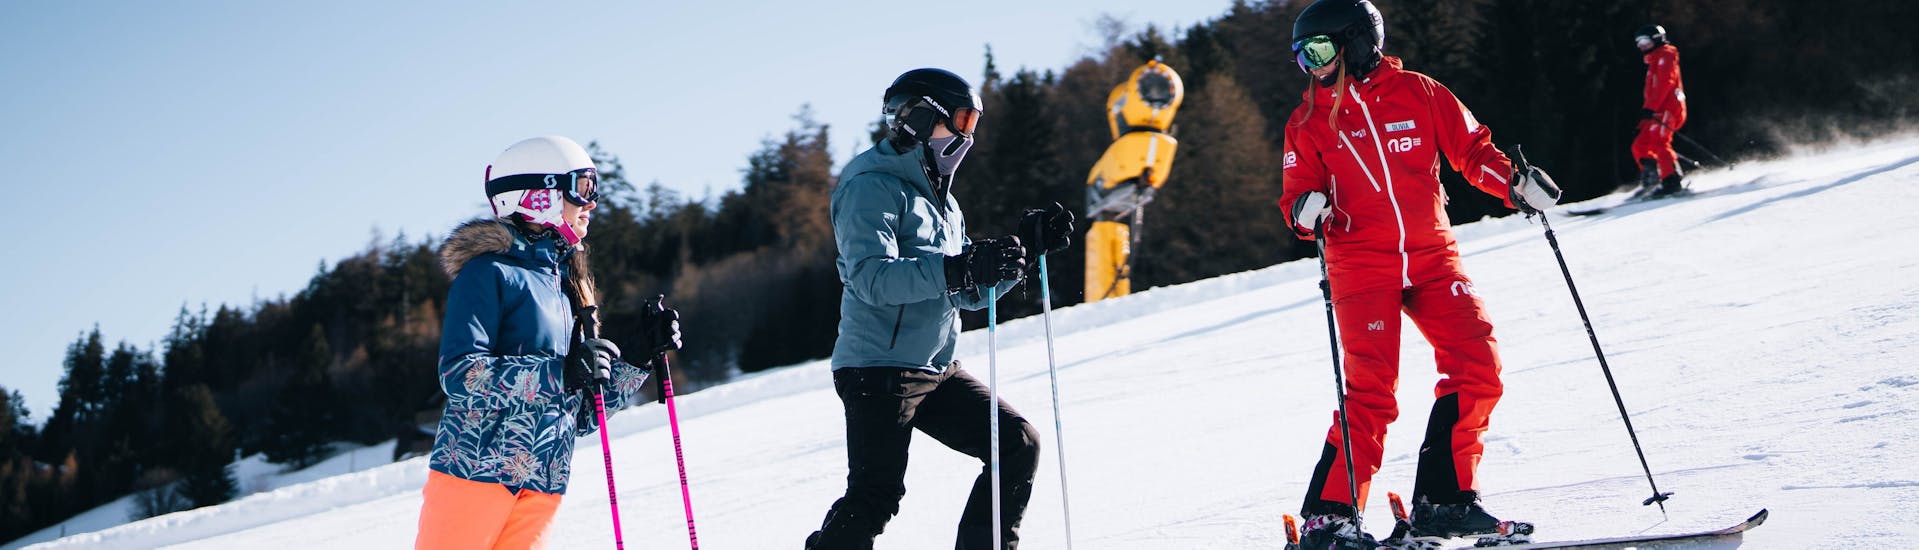 Bild von zwei Freunden mit ihrem Lehrer während eines Skikurses für Erwachsene und Jugendliche mit Neige Aventure.